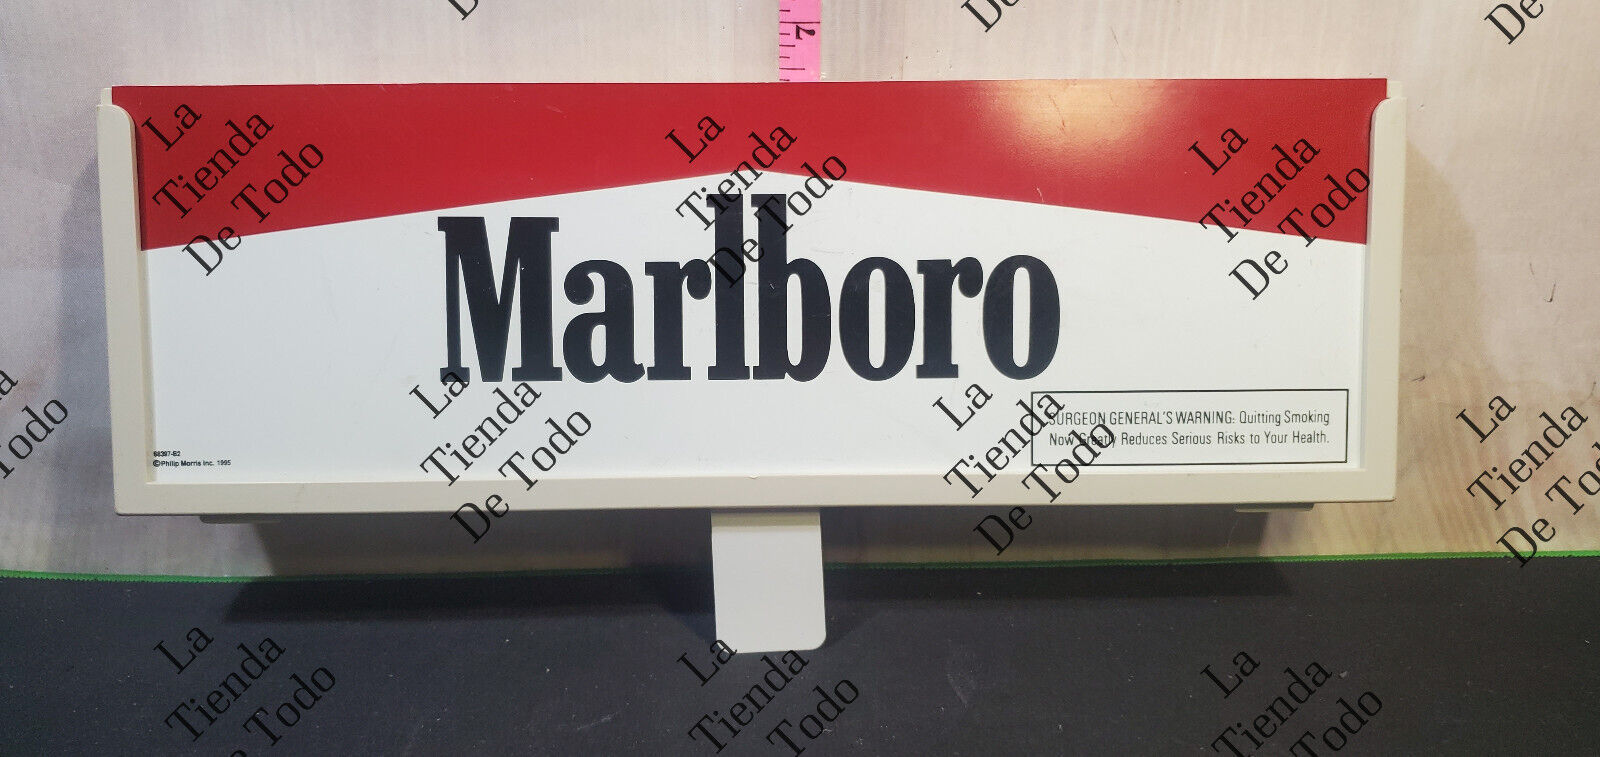 14x5 in 1995 Vintage Marlboro Display Sign by Philip Morris